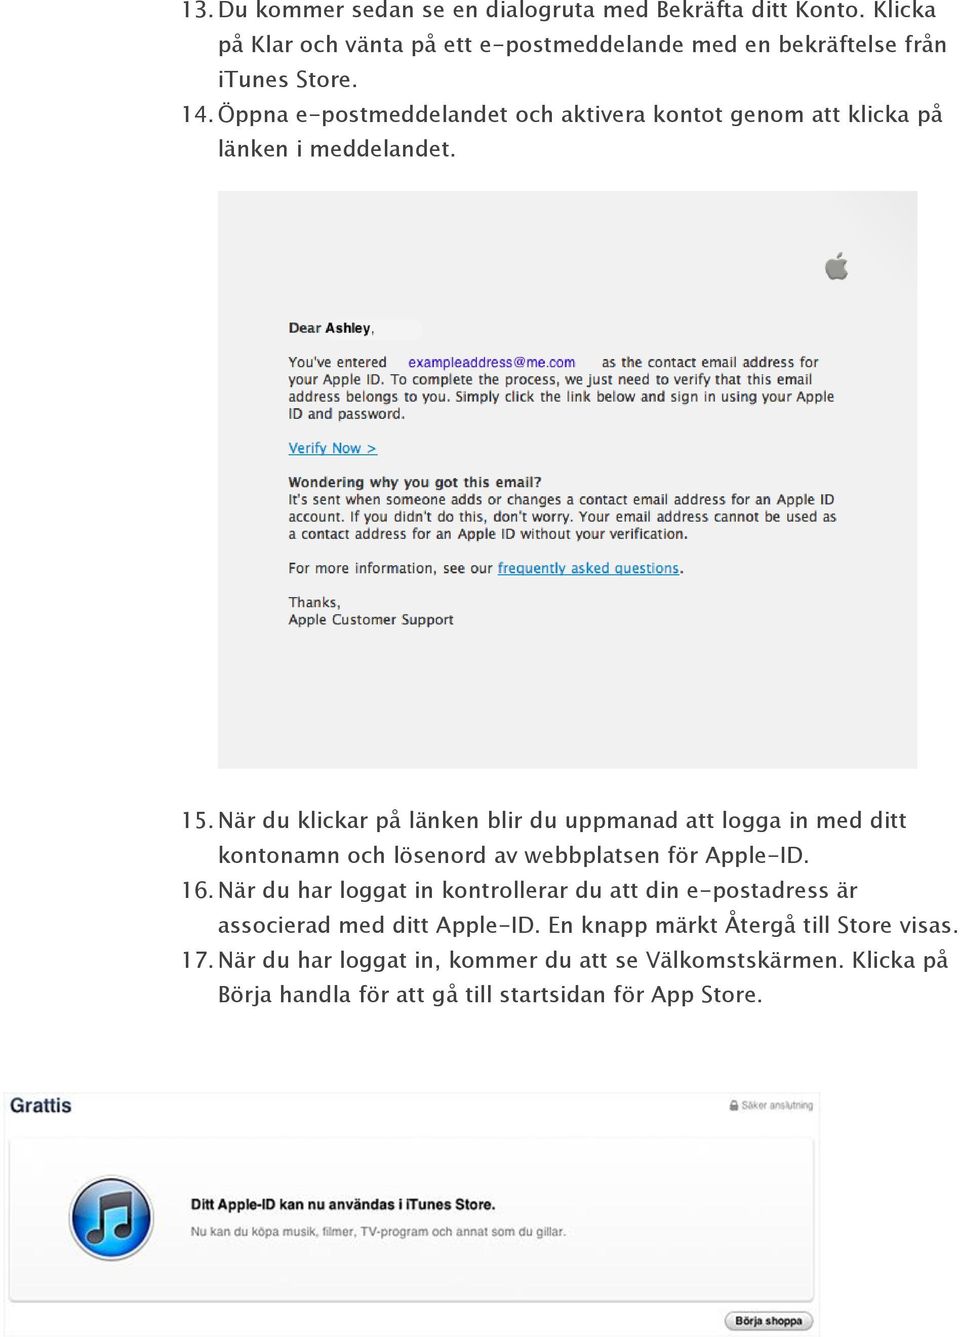 När du klickar på länken blir du uppmanad att logga in med ditt kontonamn och lösenord av webbplatsen för Apple-ID. 16.